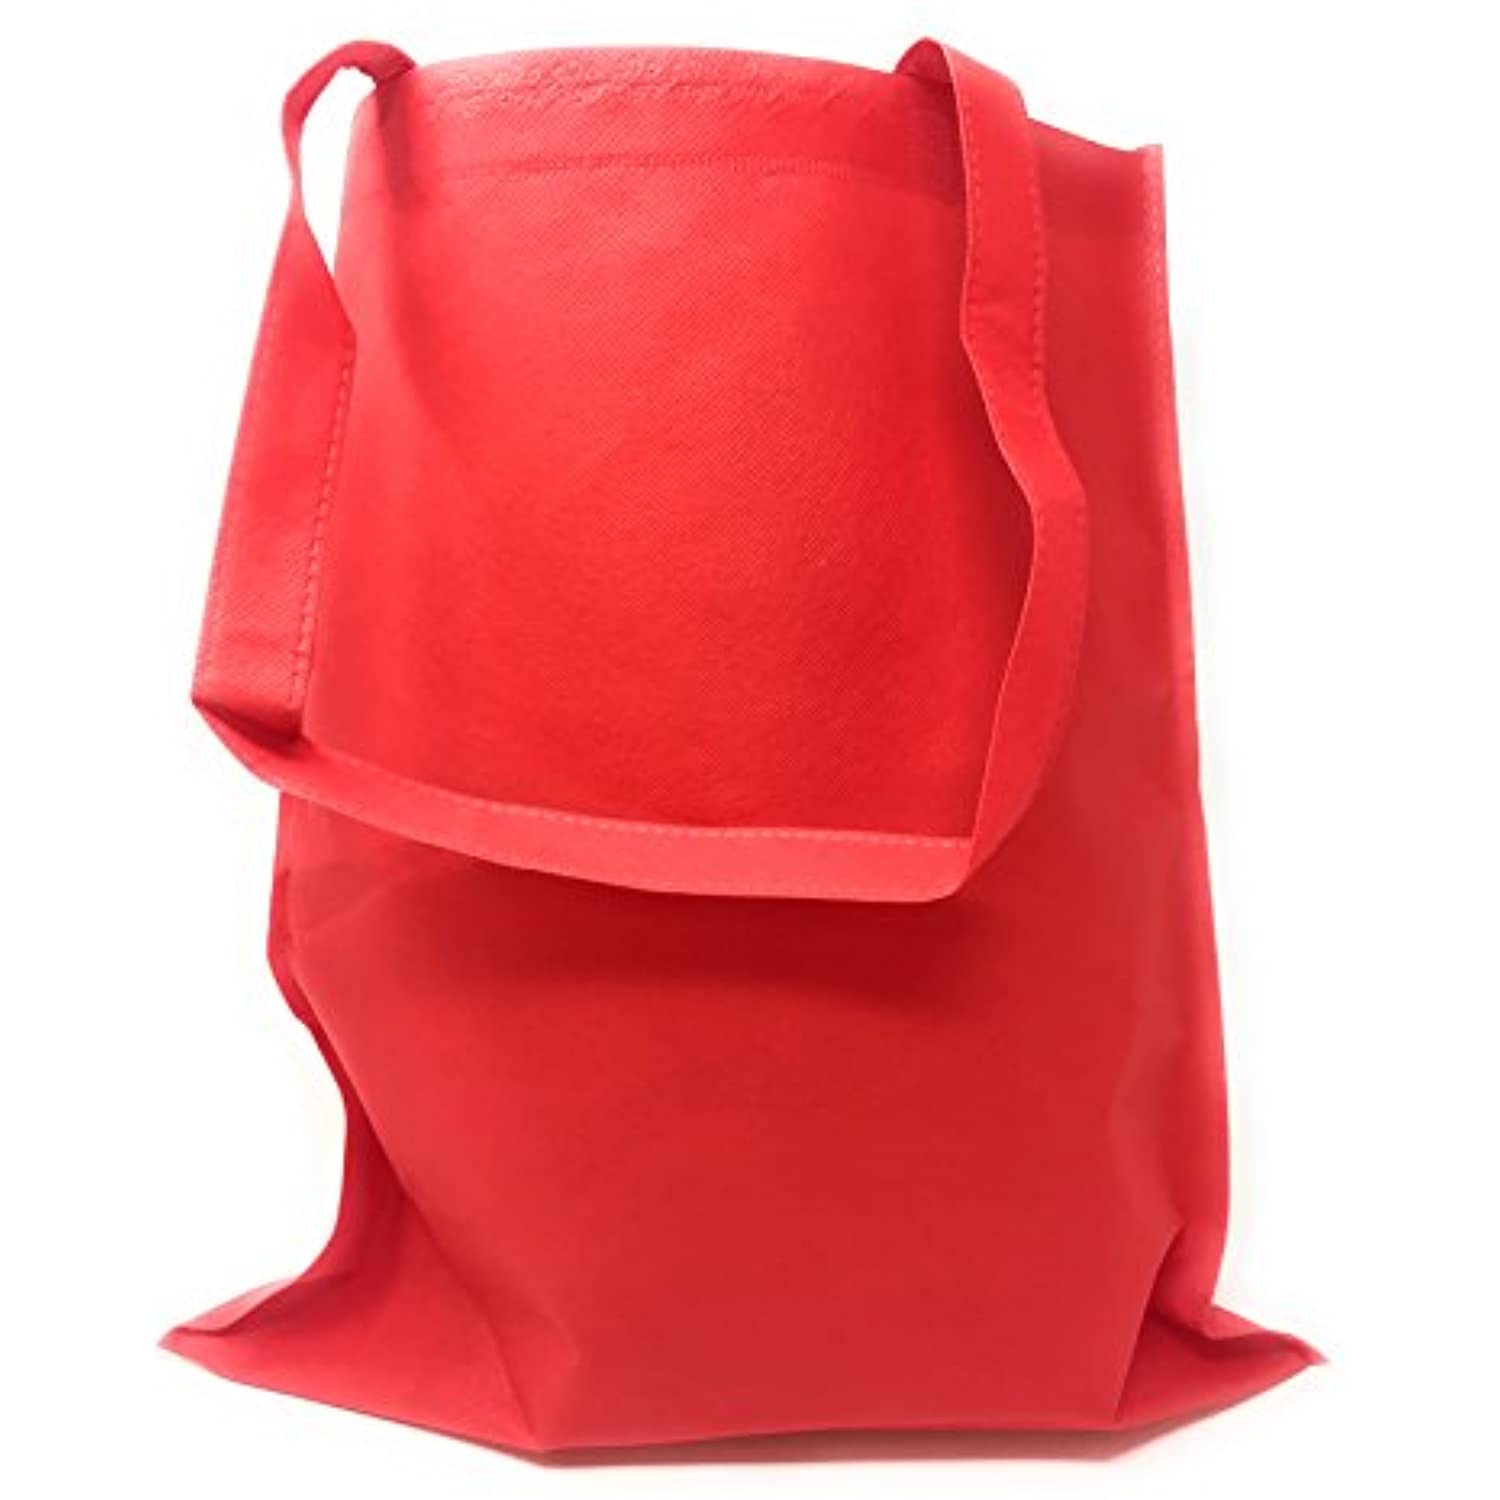 Large Shopping Bag - Red